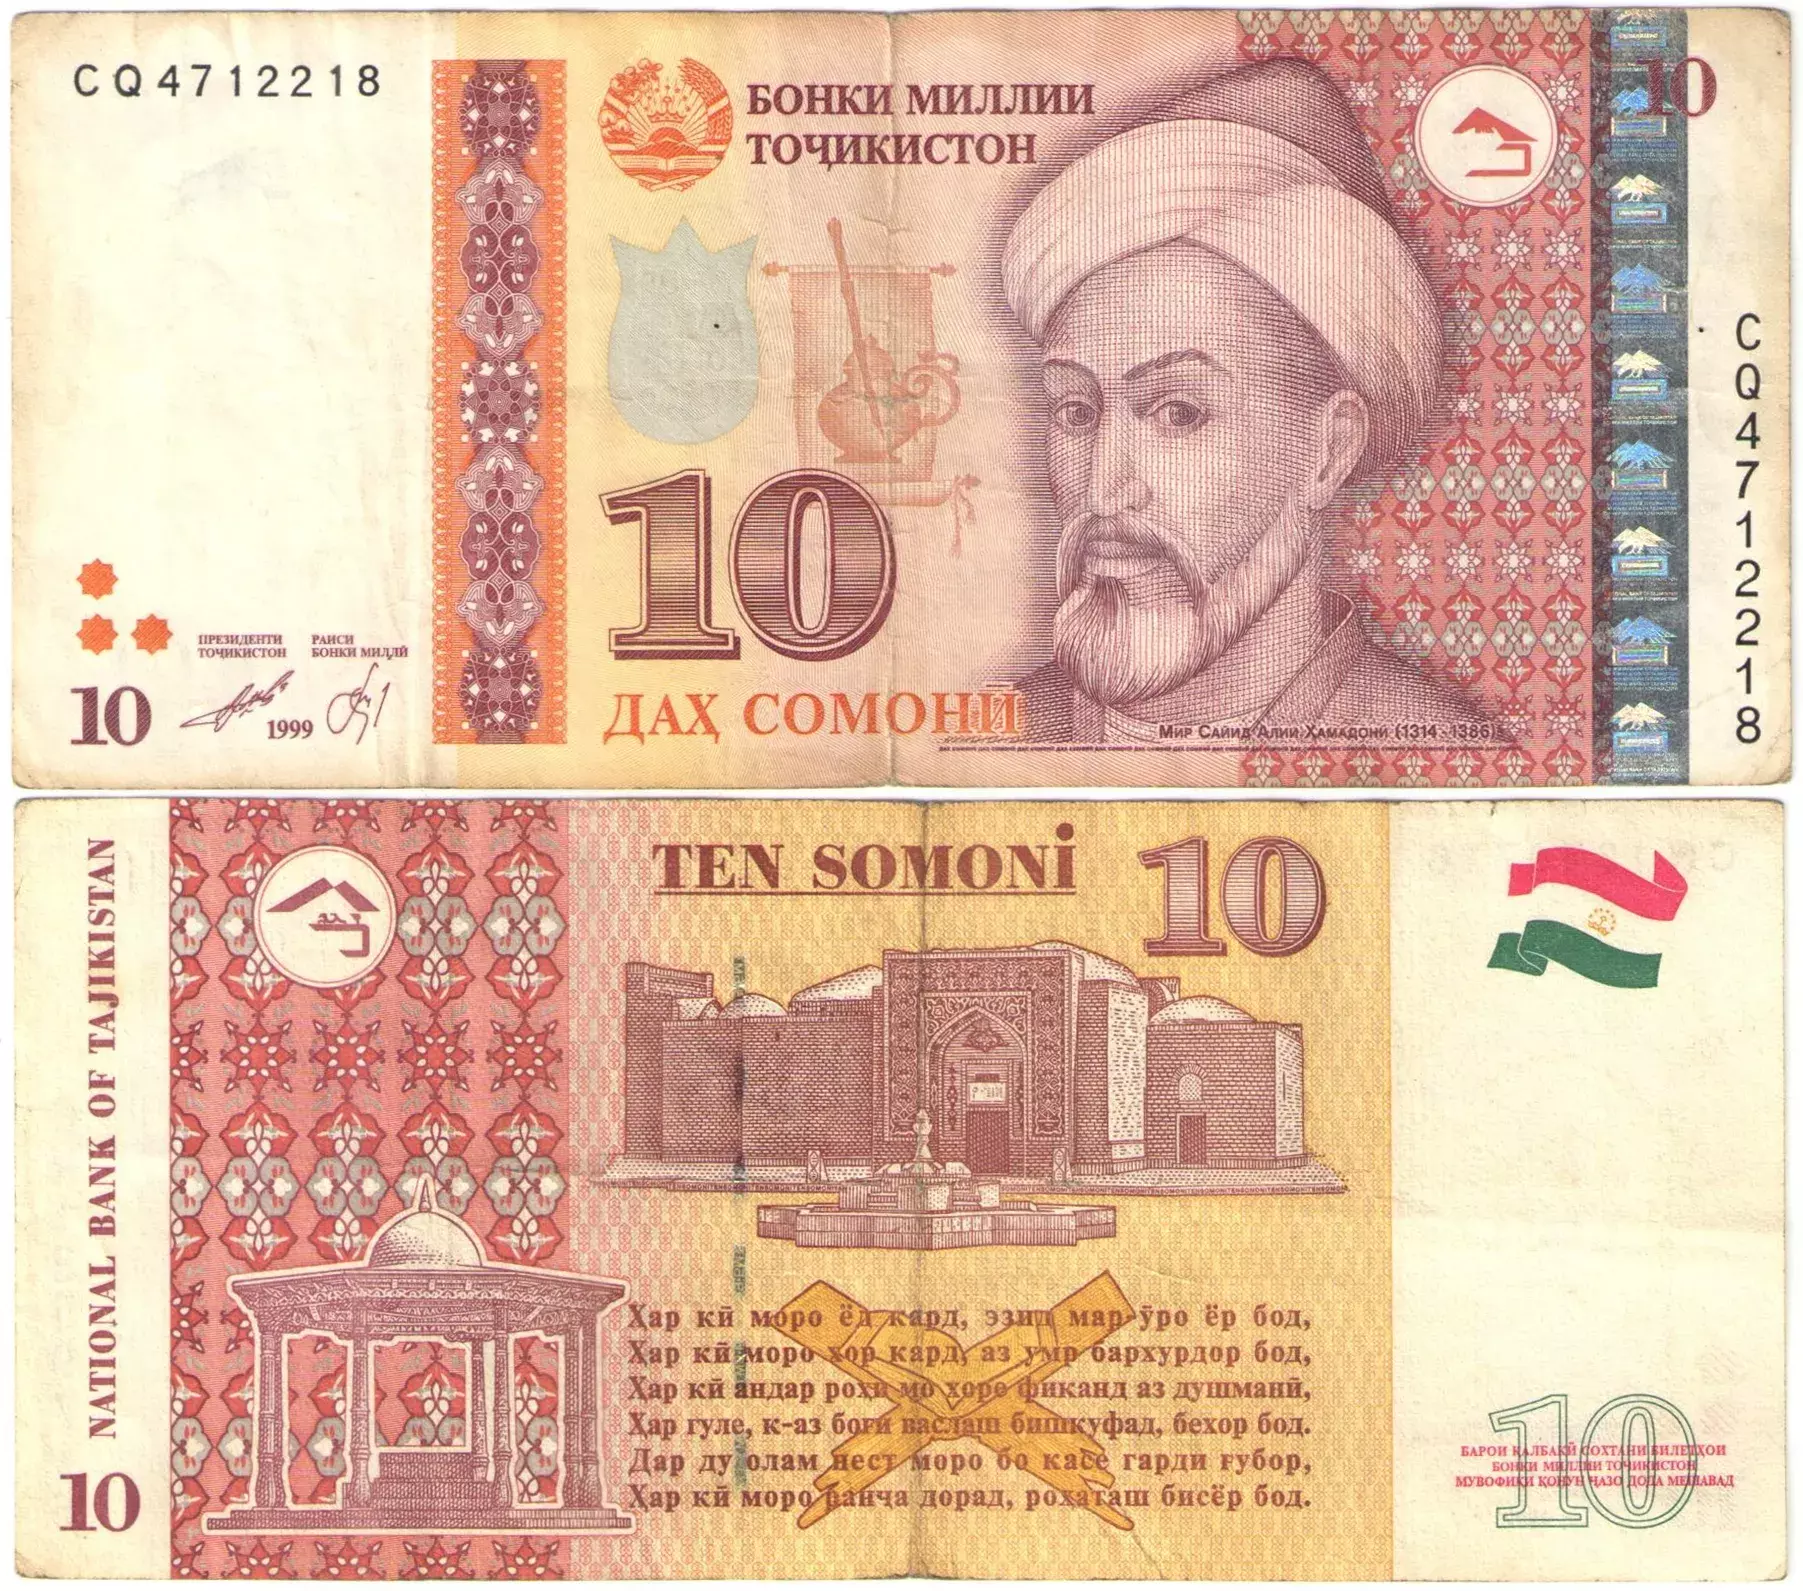 10 по таджикски. Банкноты Таджикистана. Таджикские купюры. Таджикский Сомони купюры. Купюра 10 Сомони.